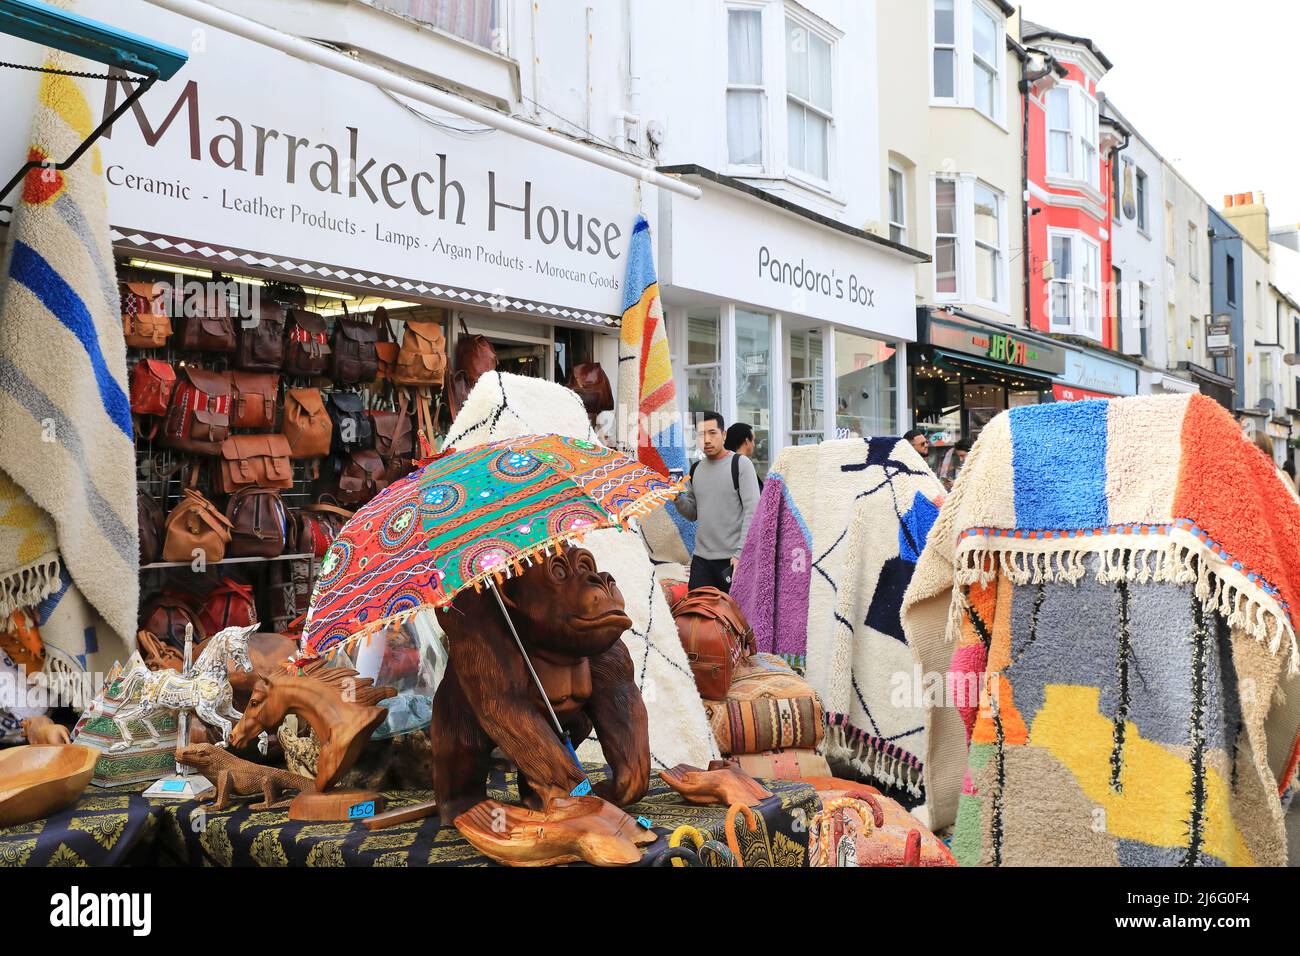 Beni Morrocan in vendita a Marrakech House su Gardner Street in bohémien Laine nord a Brighton nel Sussex orientale, Regno Unito Foto Stock